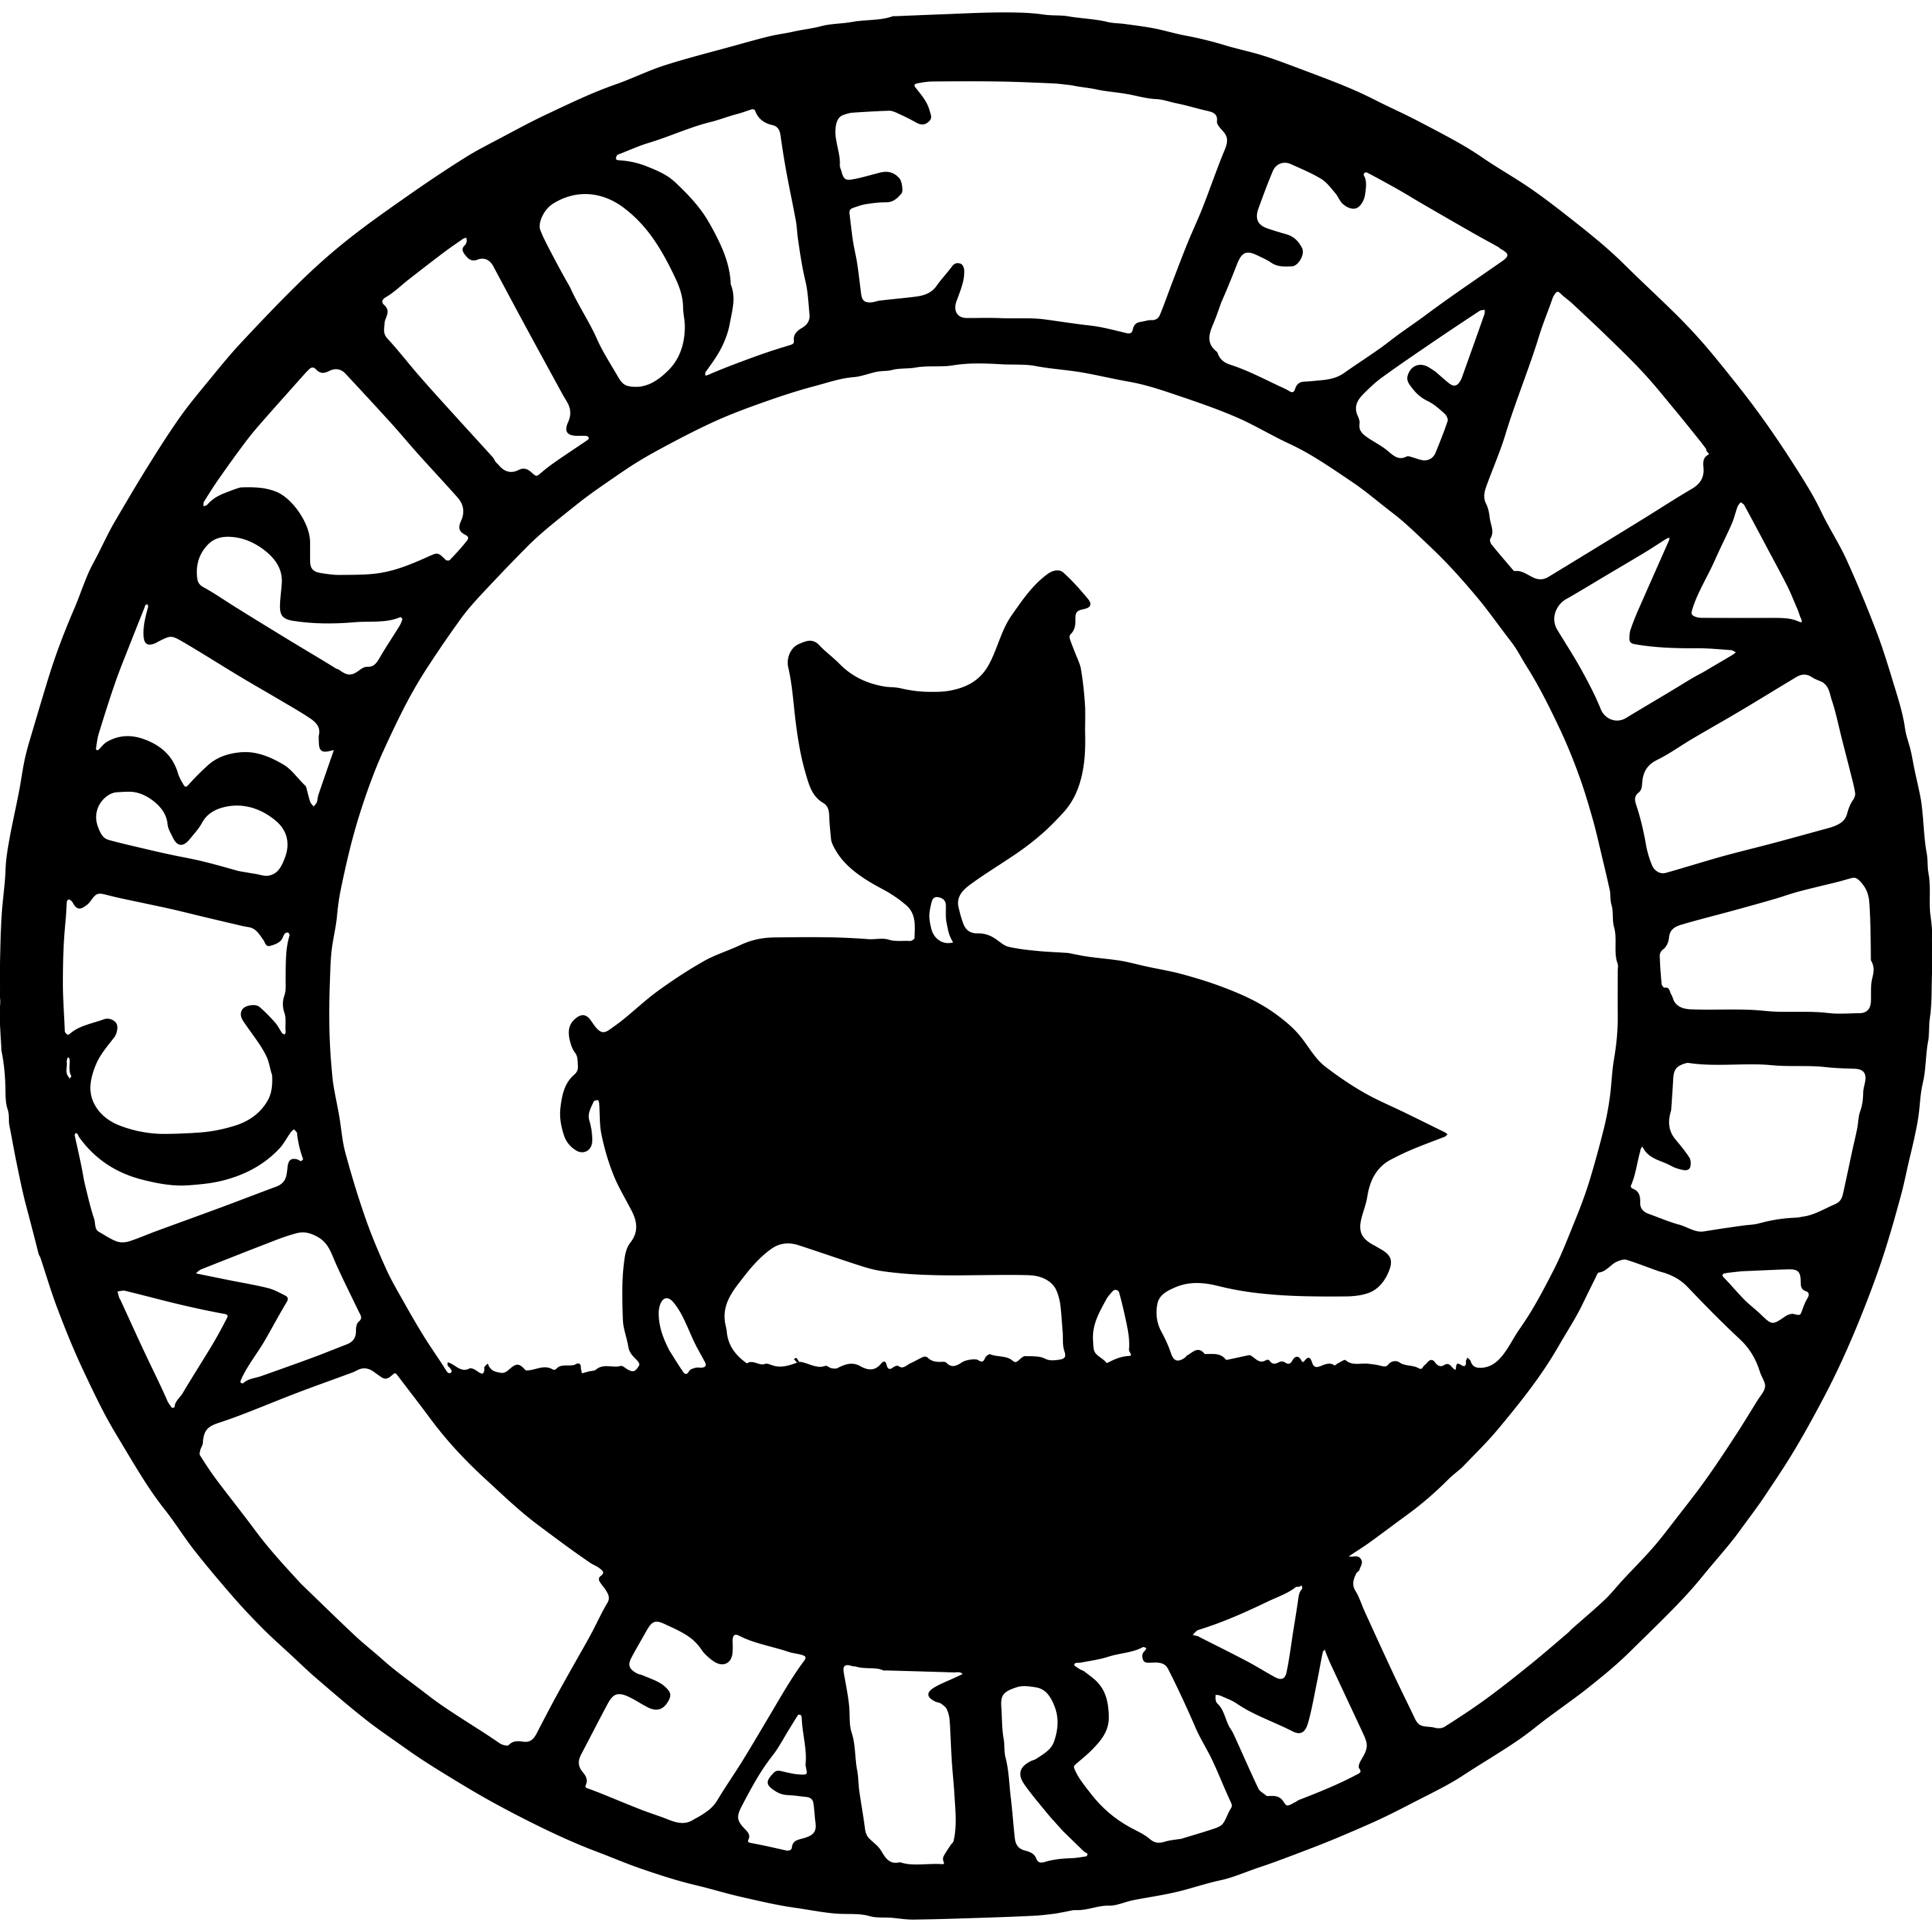 McBride Family Farm